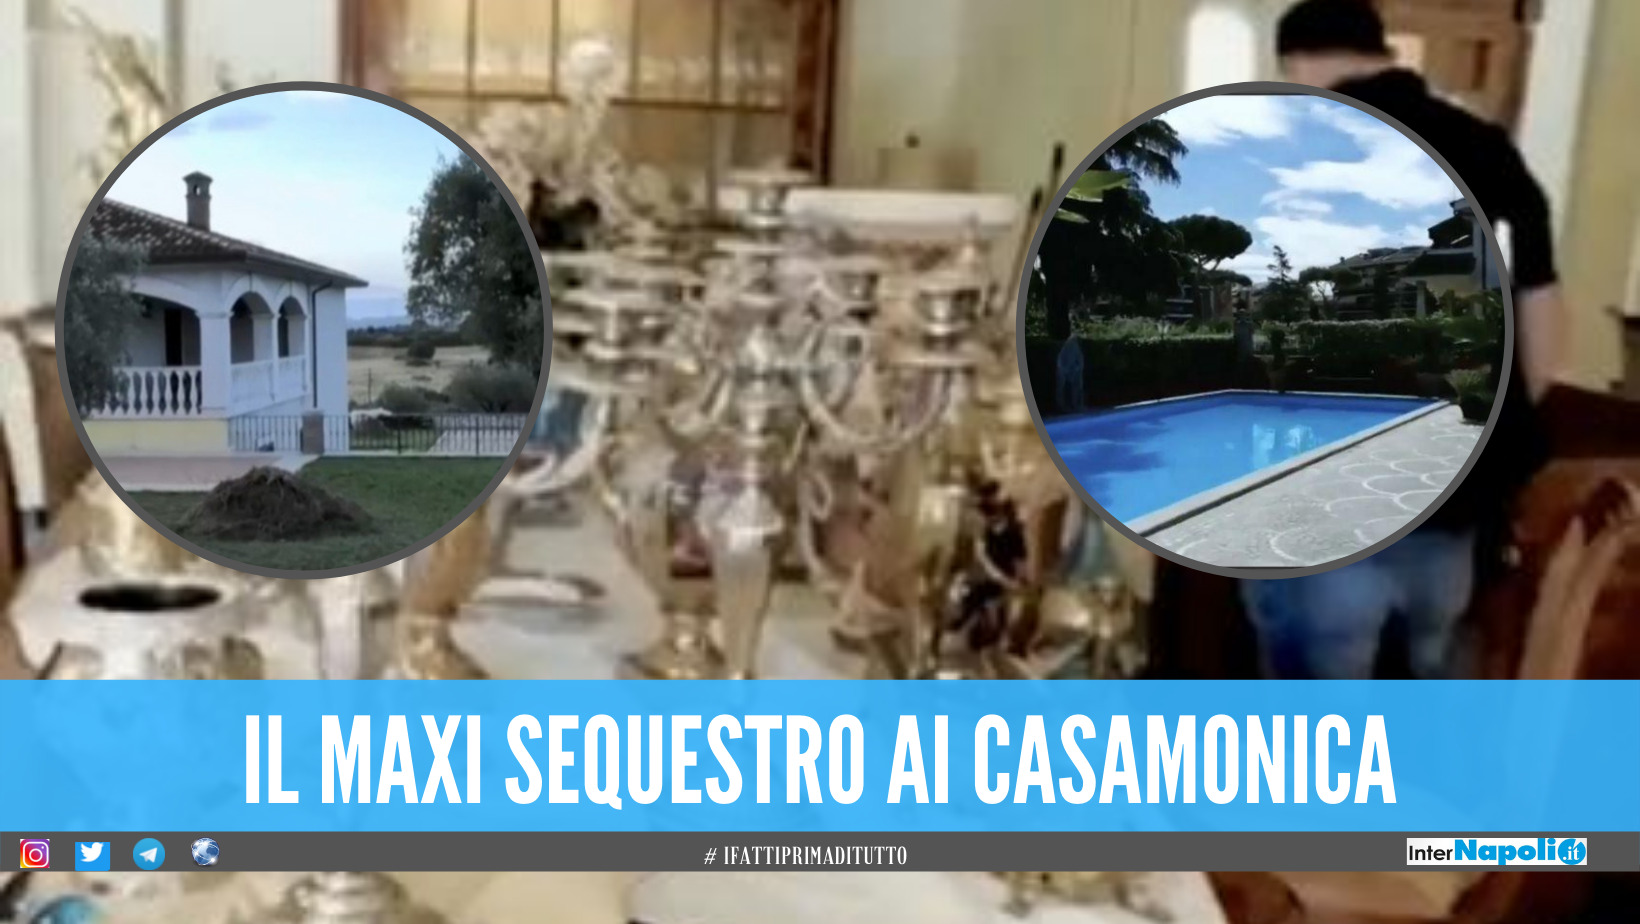 Candelabri d'oro, piatti d'argento e piscina: il sequestro da 20 mln di euro al clan Casamonica